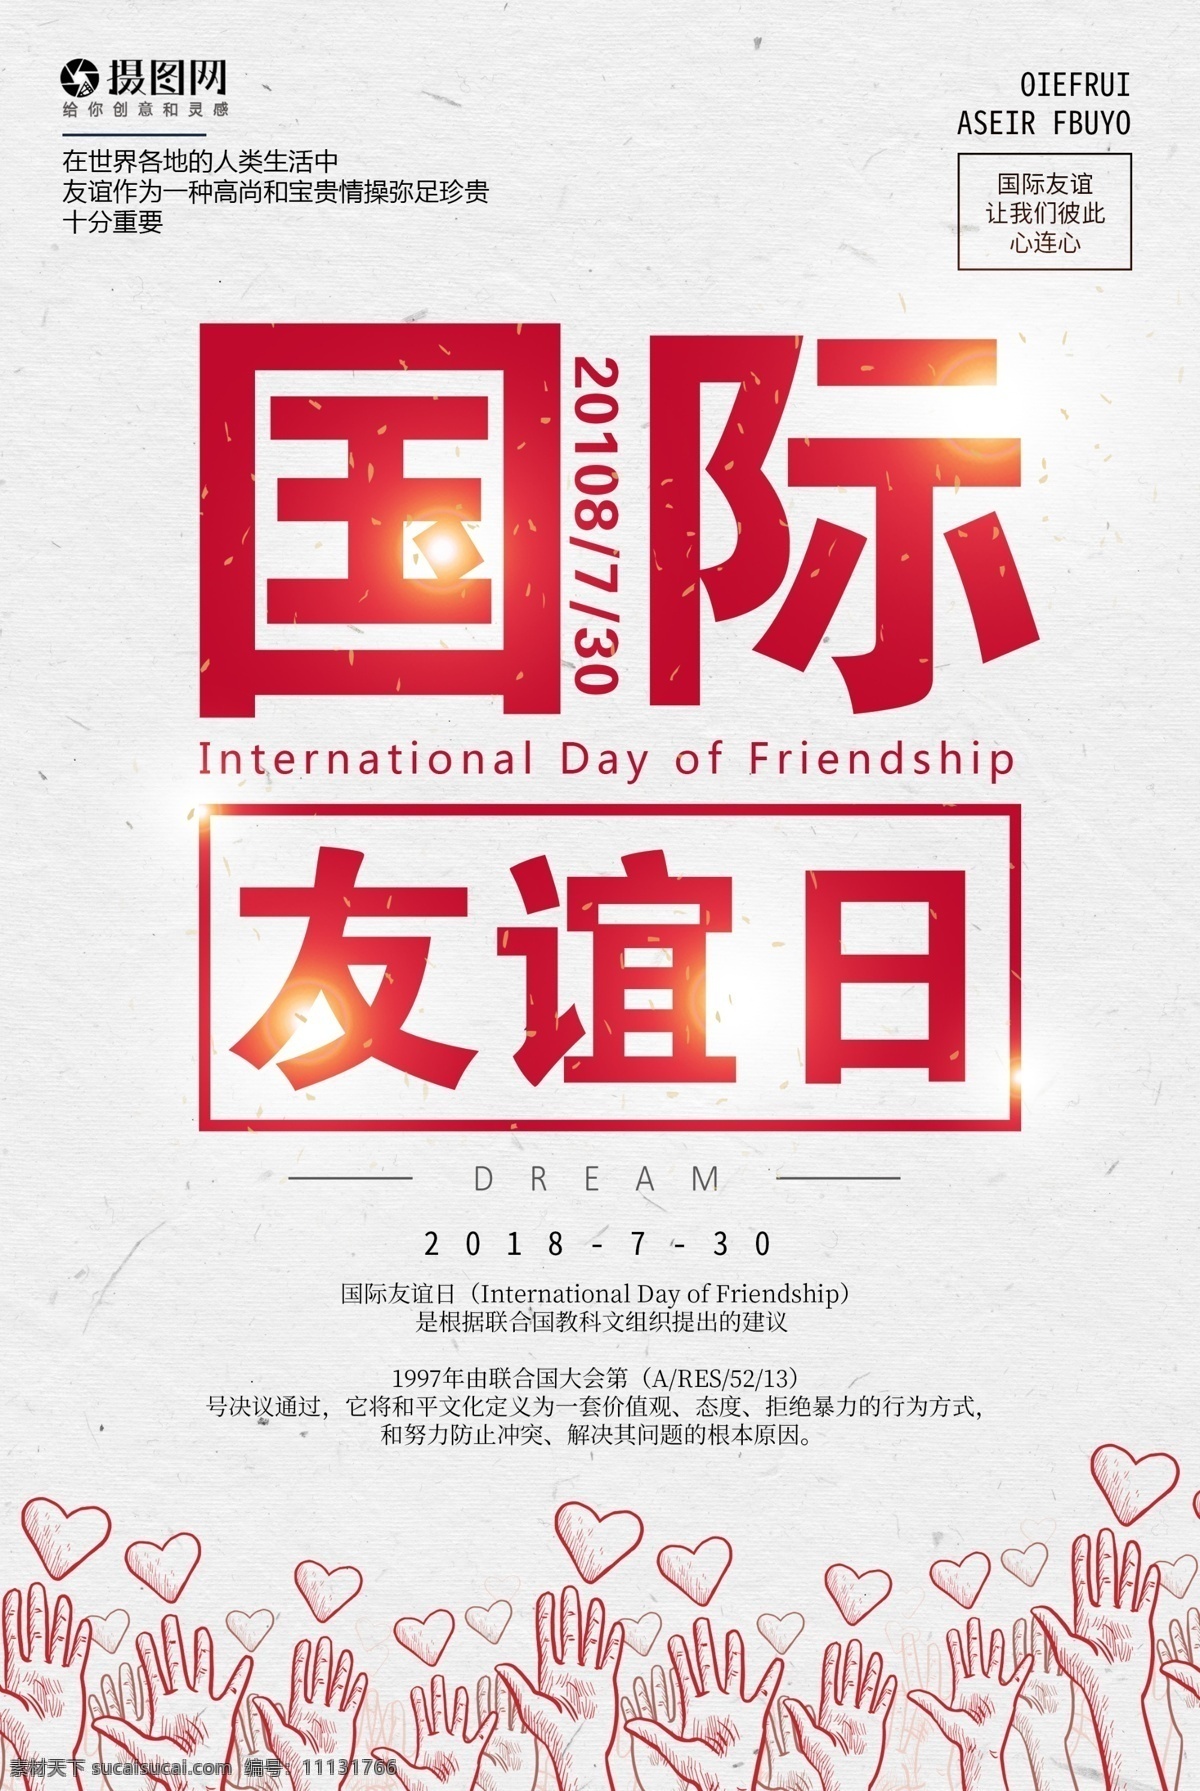 国际 友谊 日 海报 国际友谊日 友人 精神 联合国